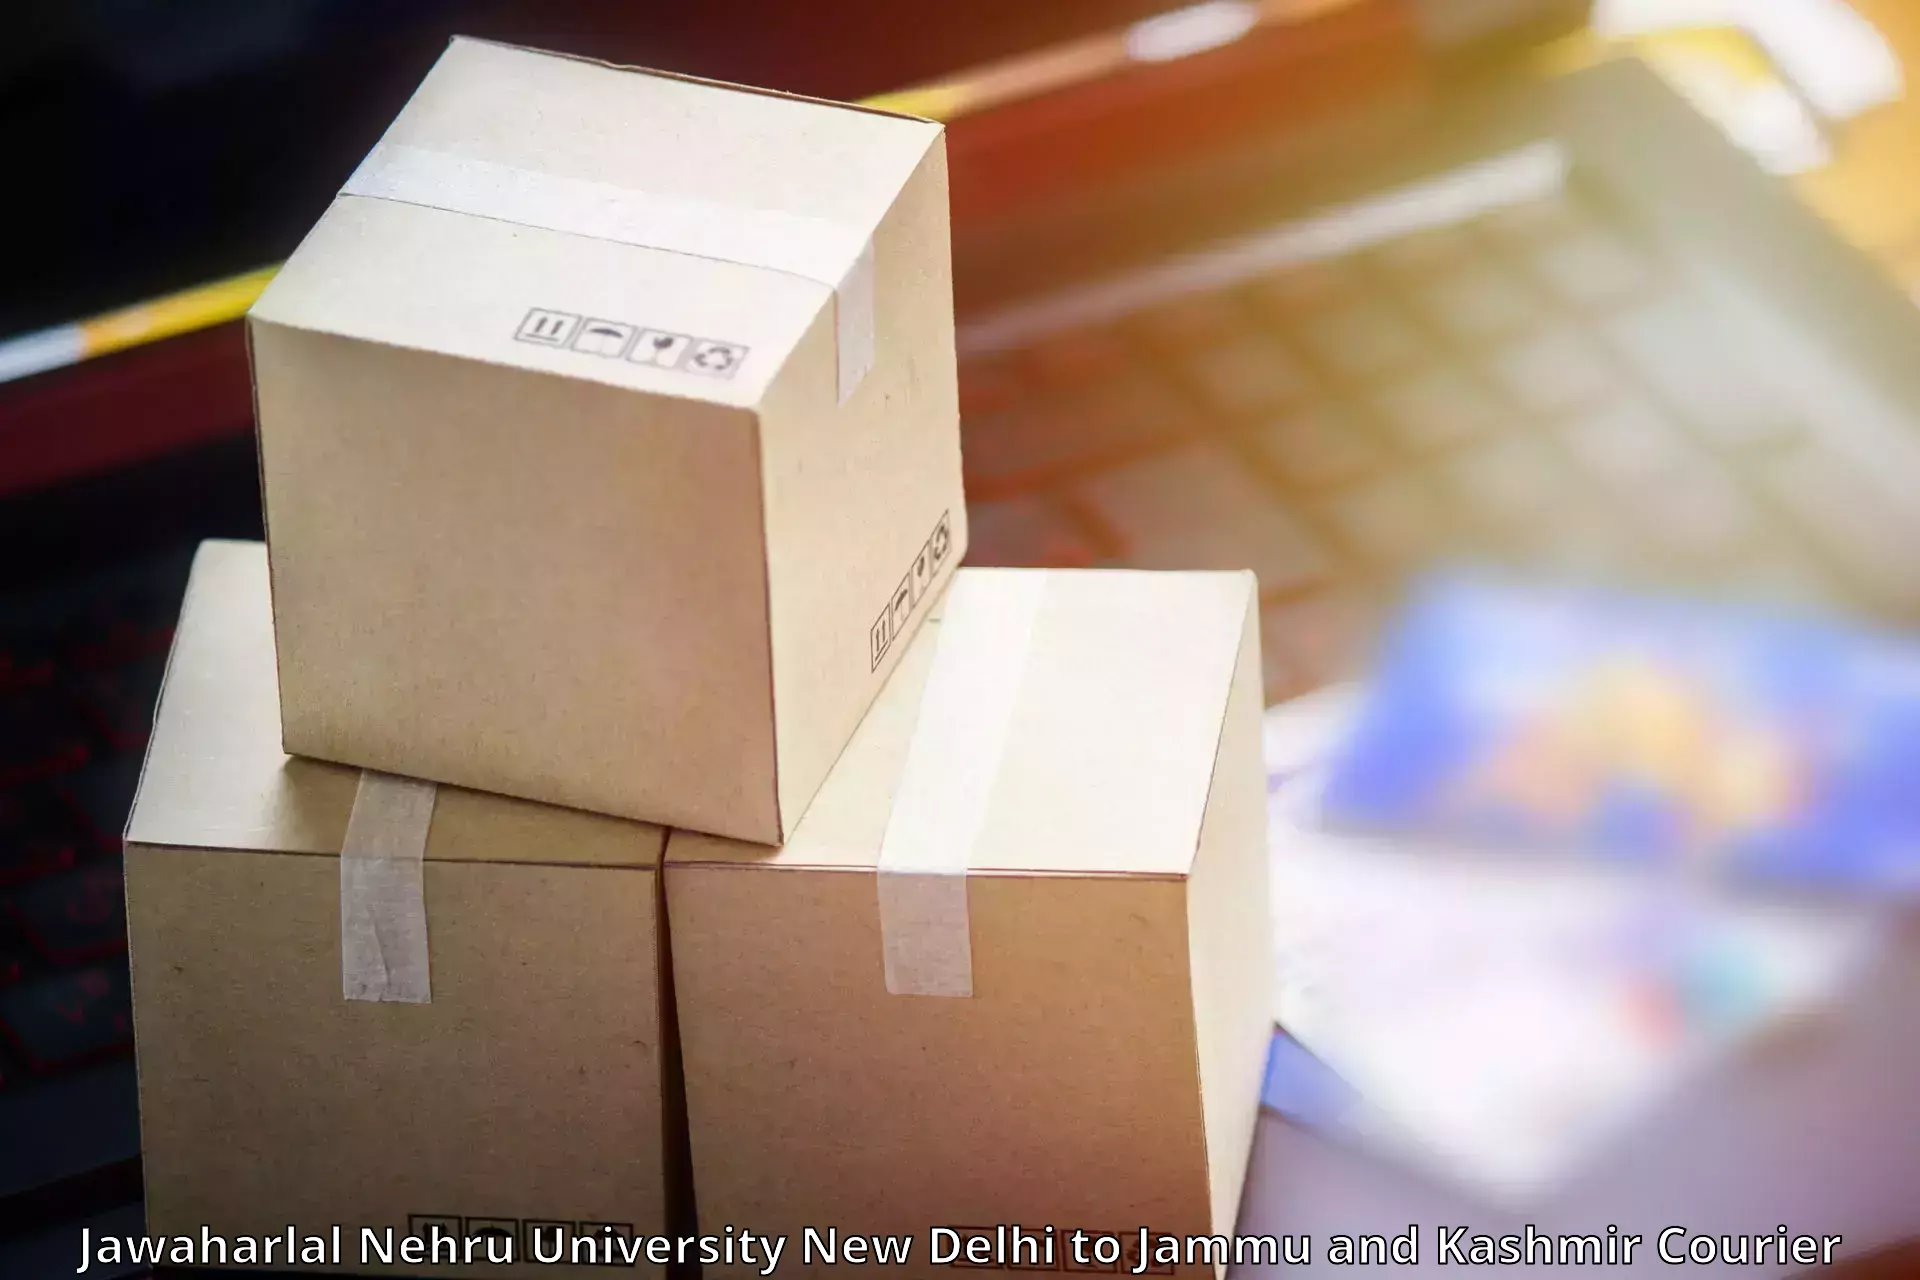 Nationwide shipping capabilities Jawaharlal Nehru University New Delhi to University of Jammu